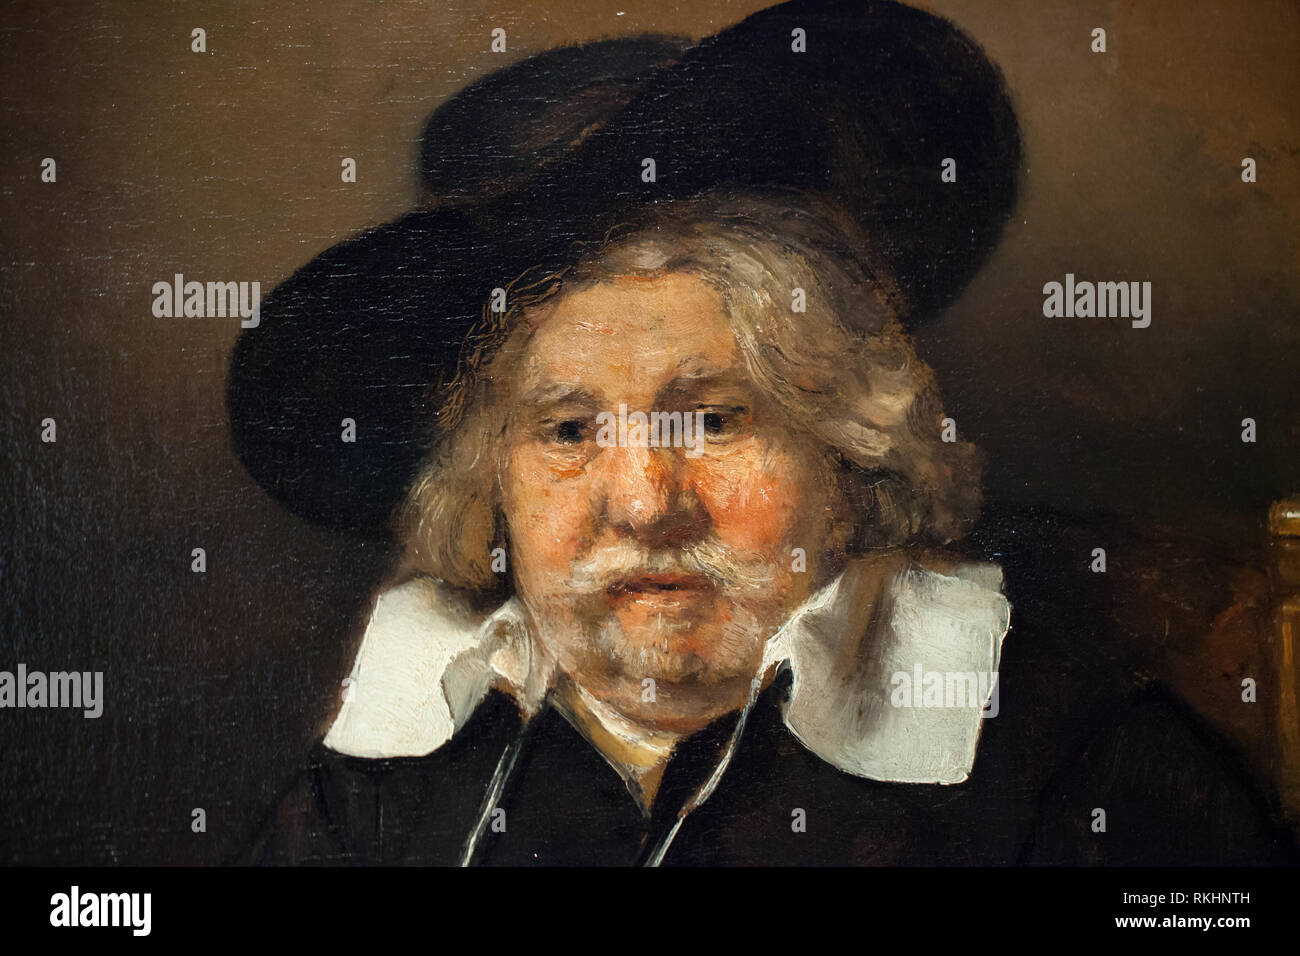 Alter Mann mit schwarzem Hut - Späten Rembrandt Ausstellung im Jahr 2015 in Amsterdam Stockfoto